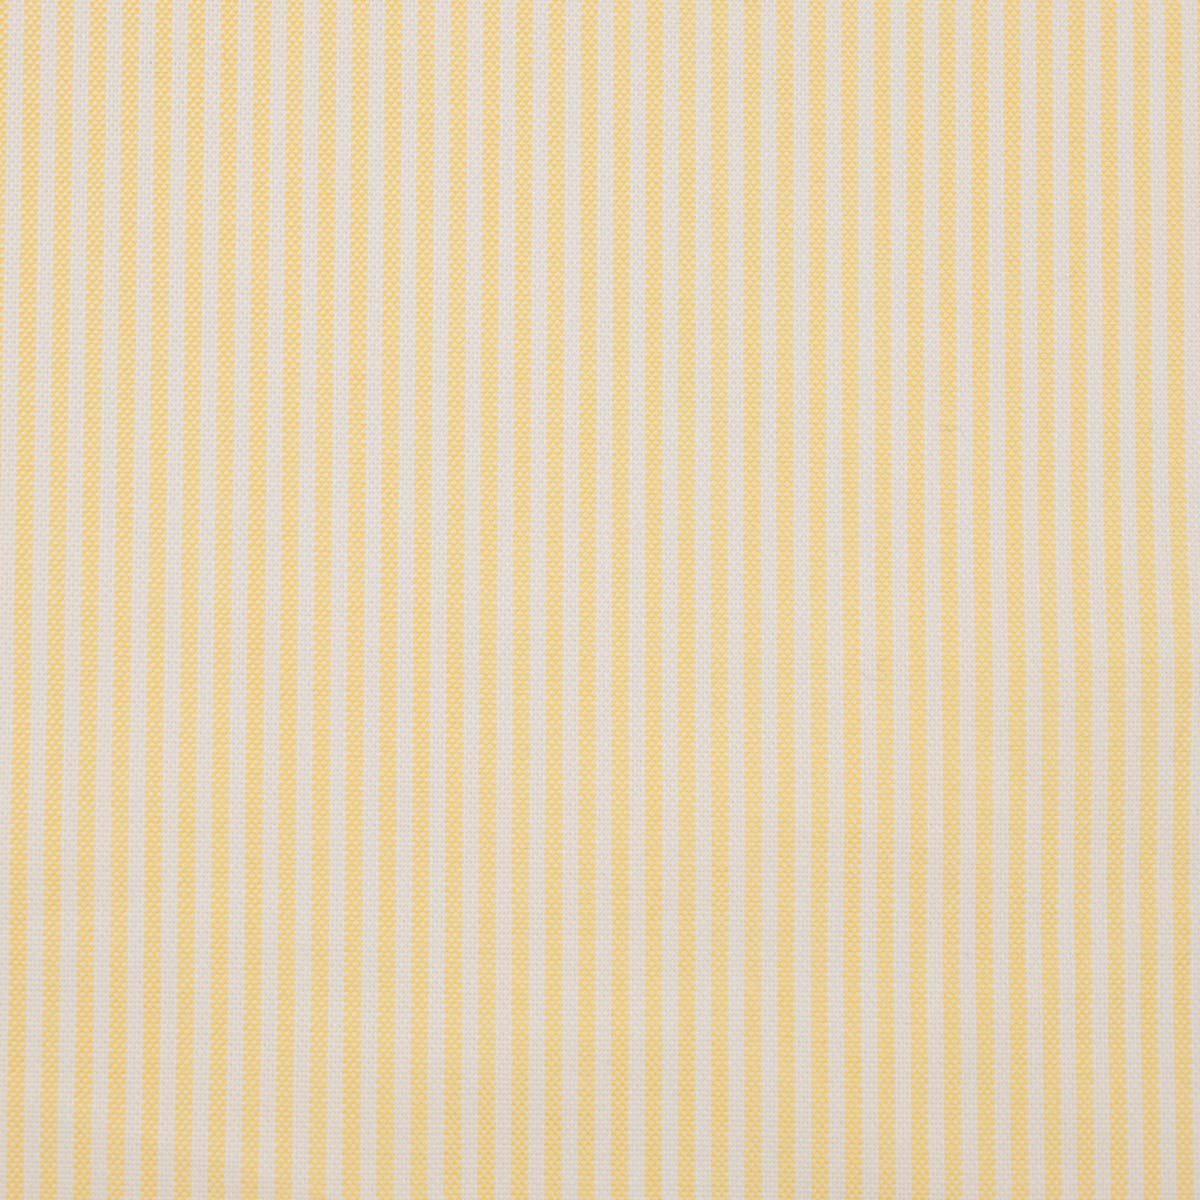 Yellow Shirting Fabric 6850